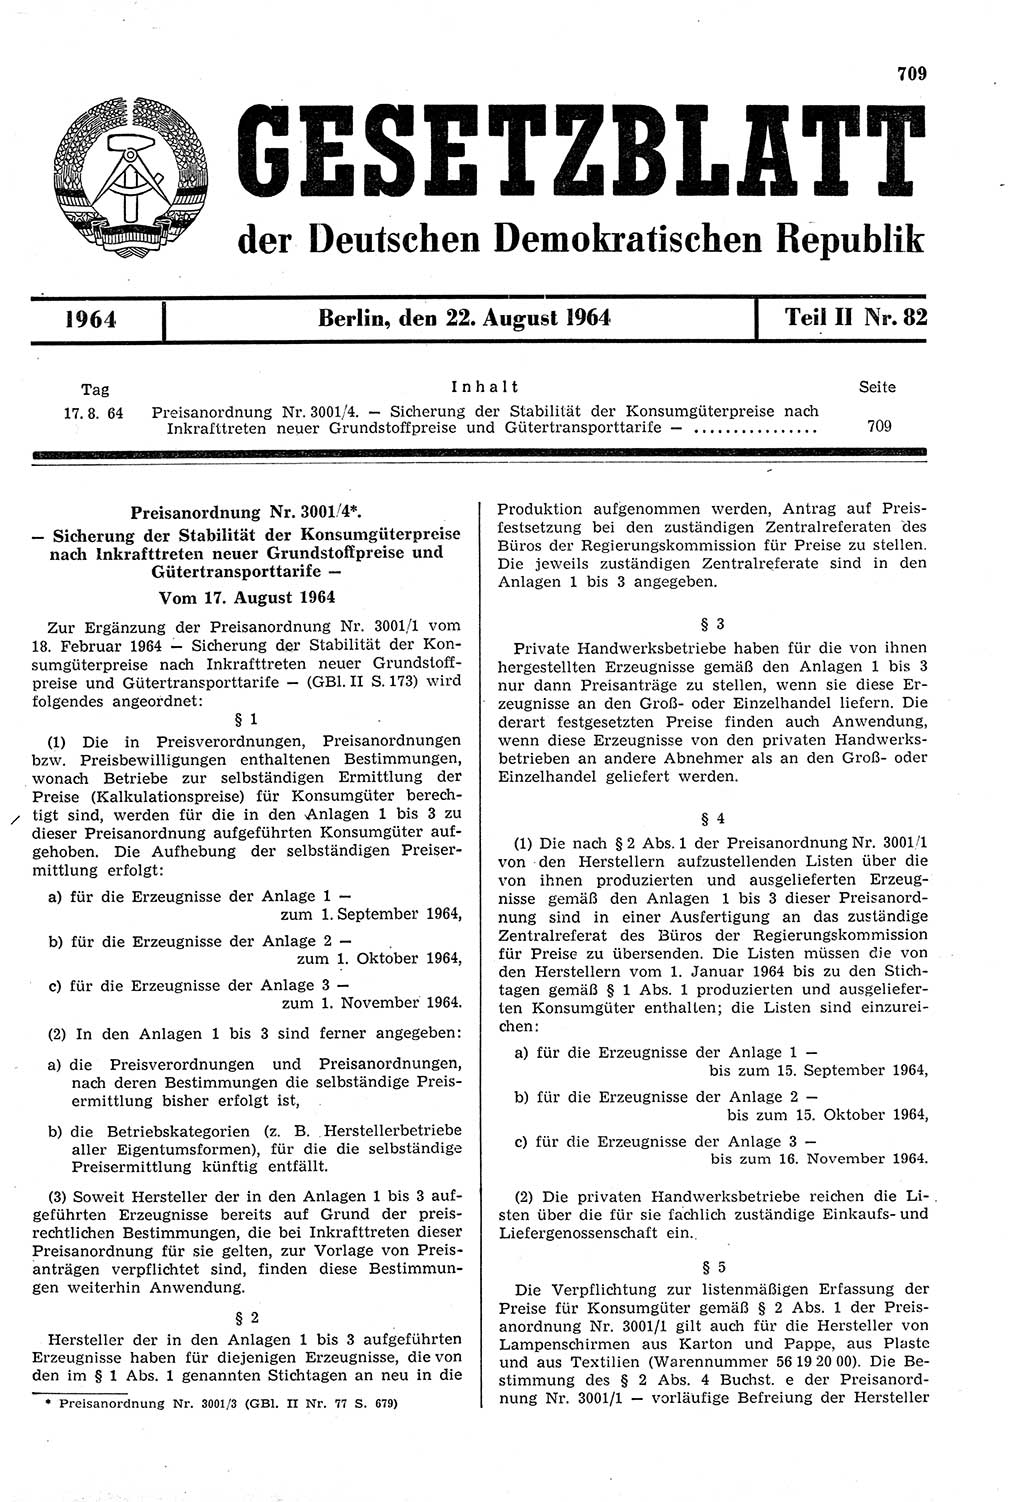 Gesetzblatt (GBl.) der Deutschen Demokratischen Republik (DDR) Teil ⅠⅠ 1964, Seite 709 (GBl. DDR ⅠⅠ 1964, S. 709)